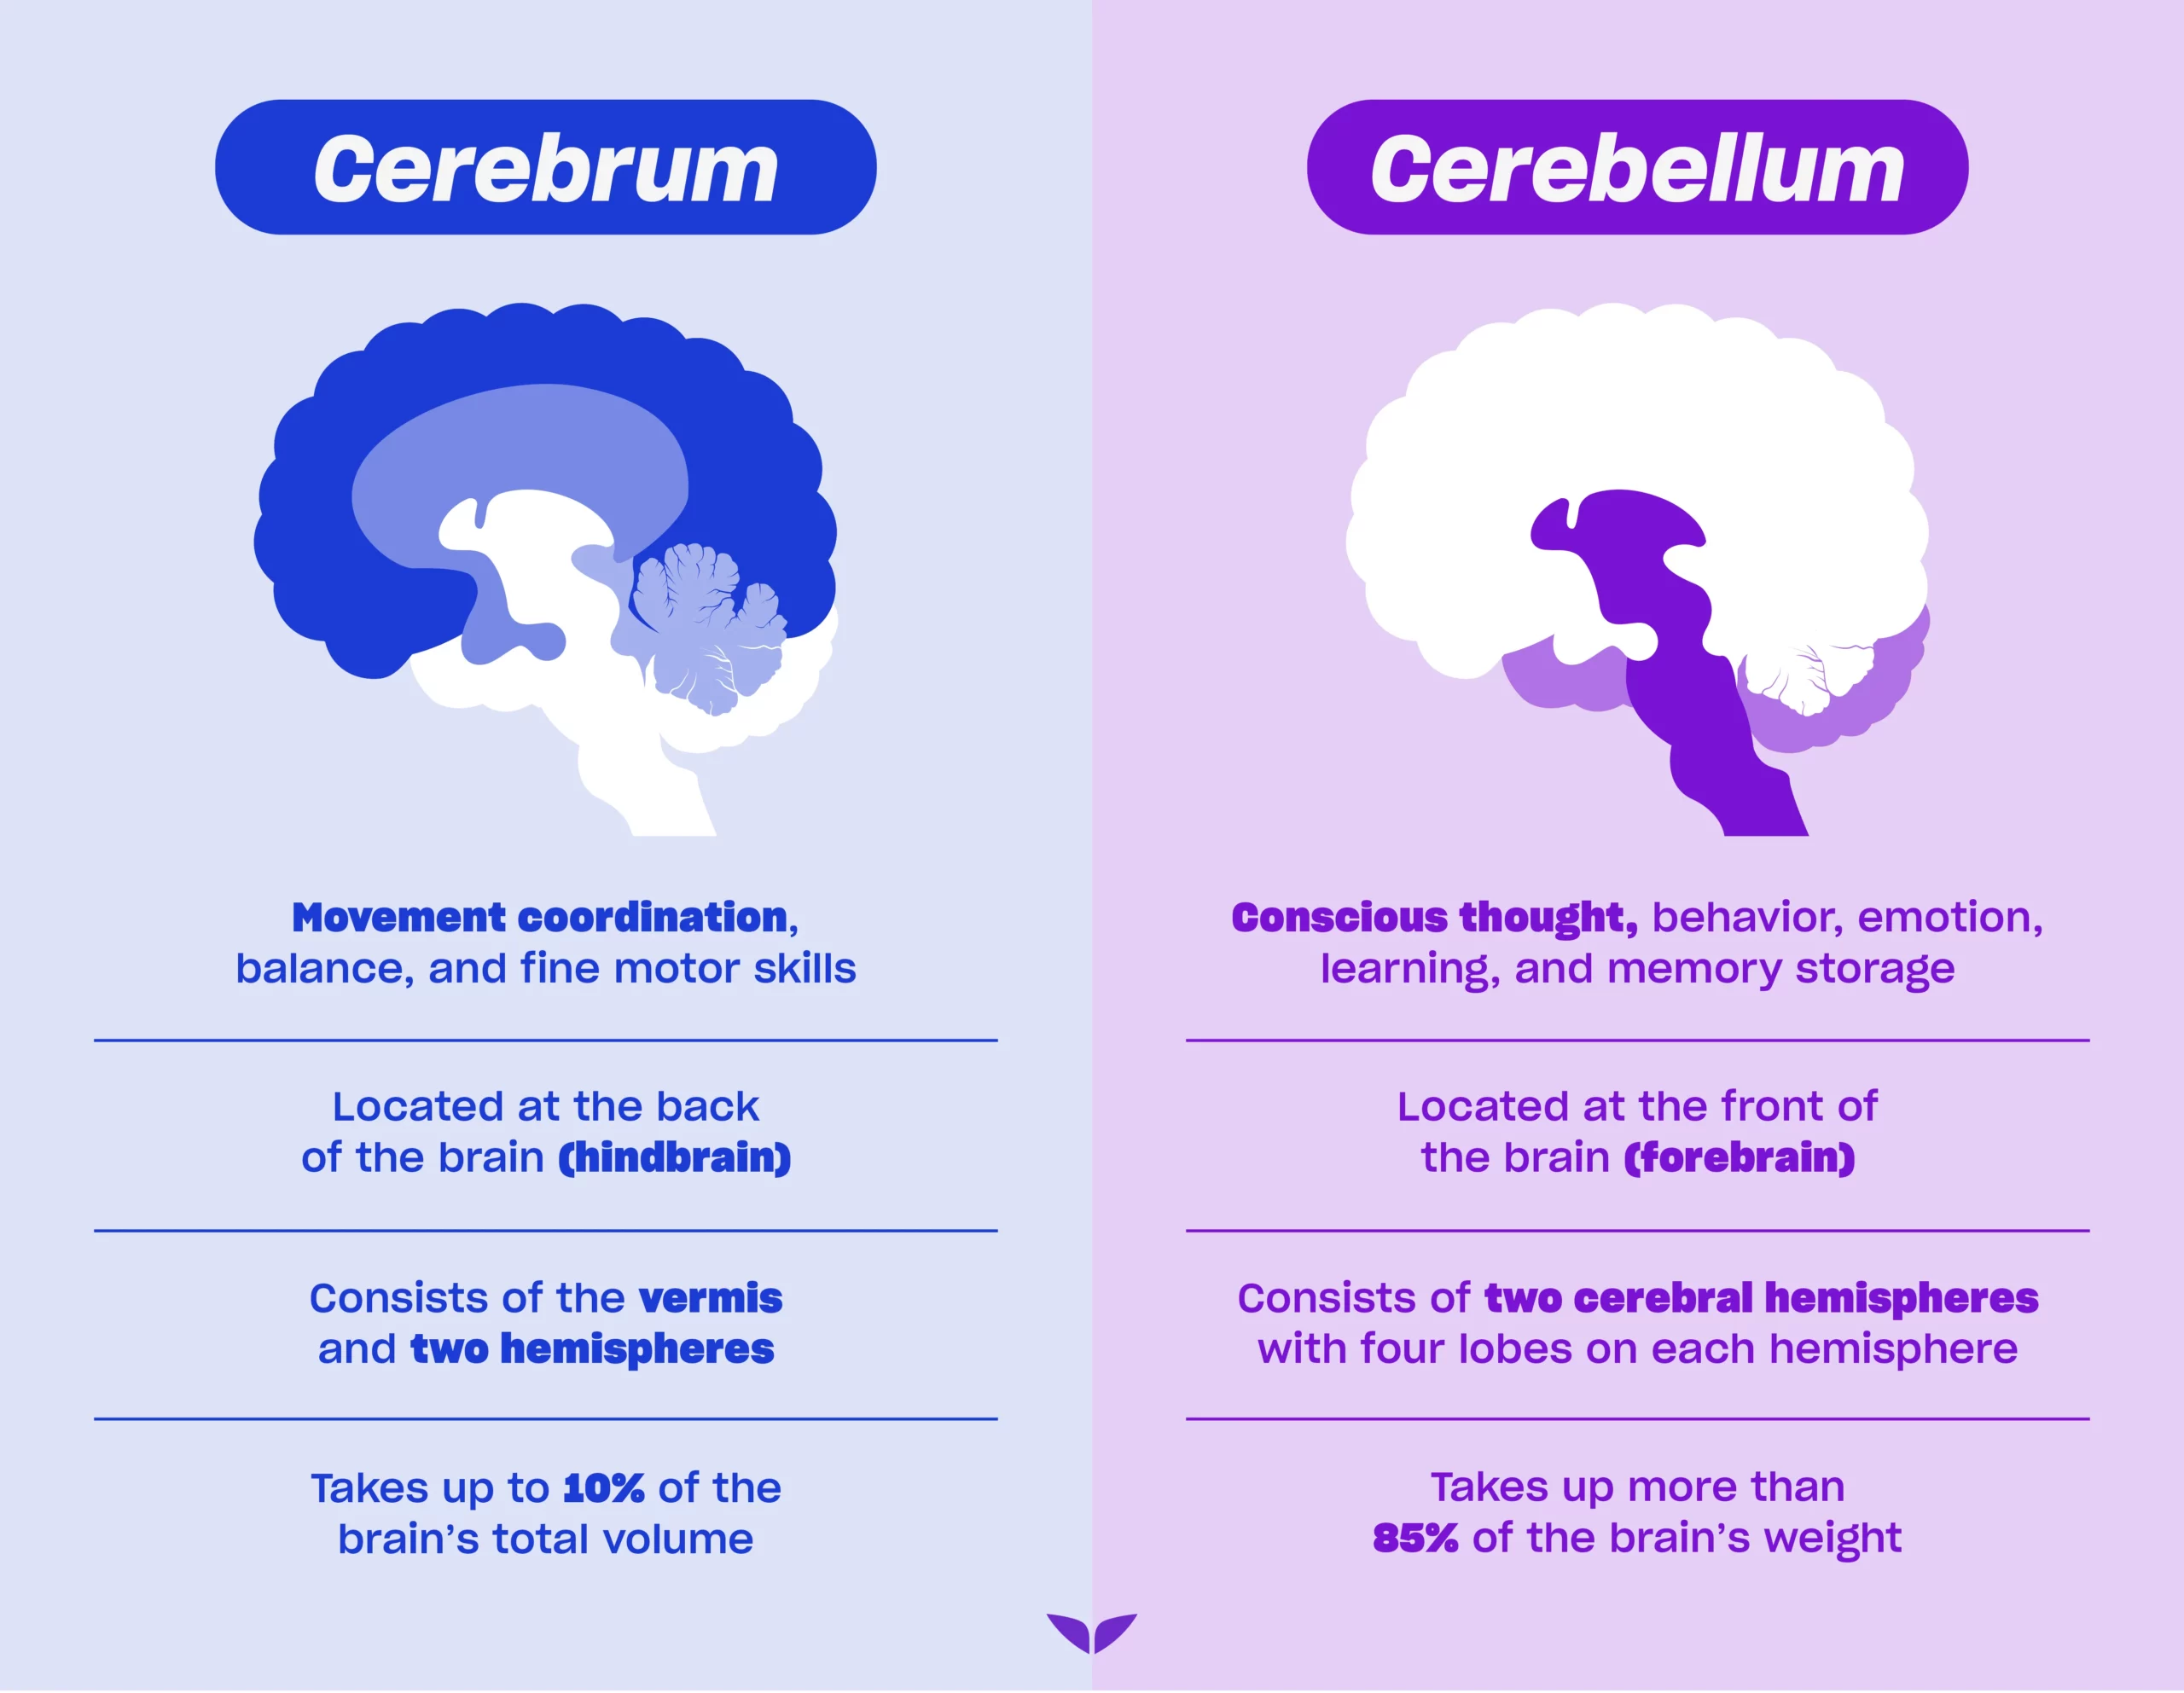 Custom image of cerebrum vs. cerebellum